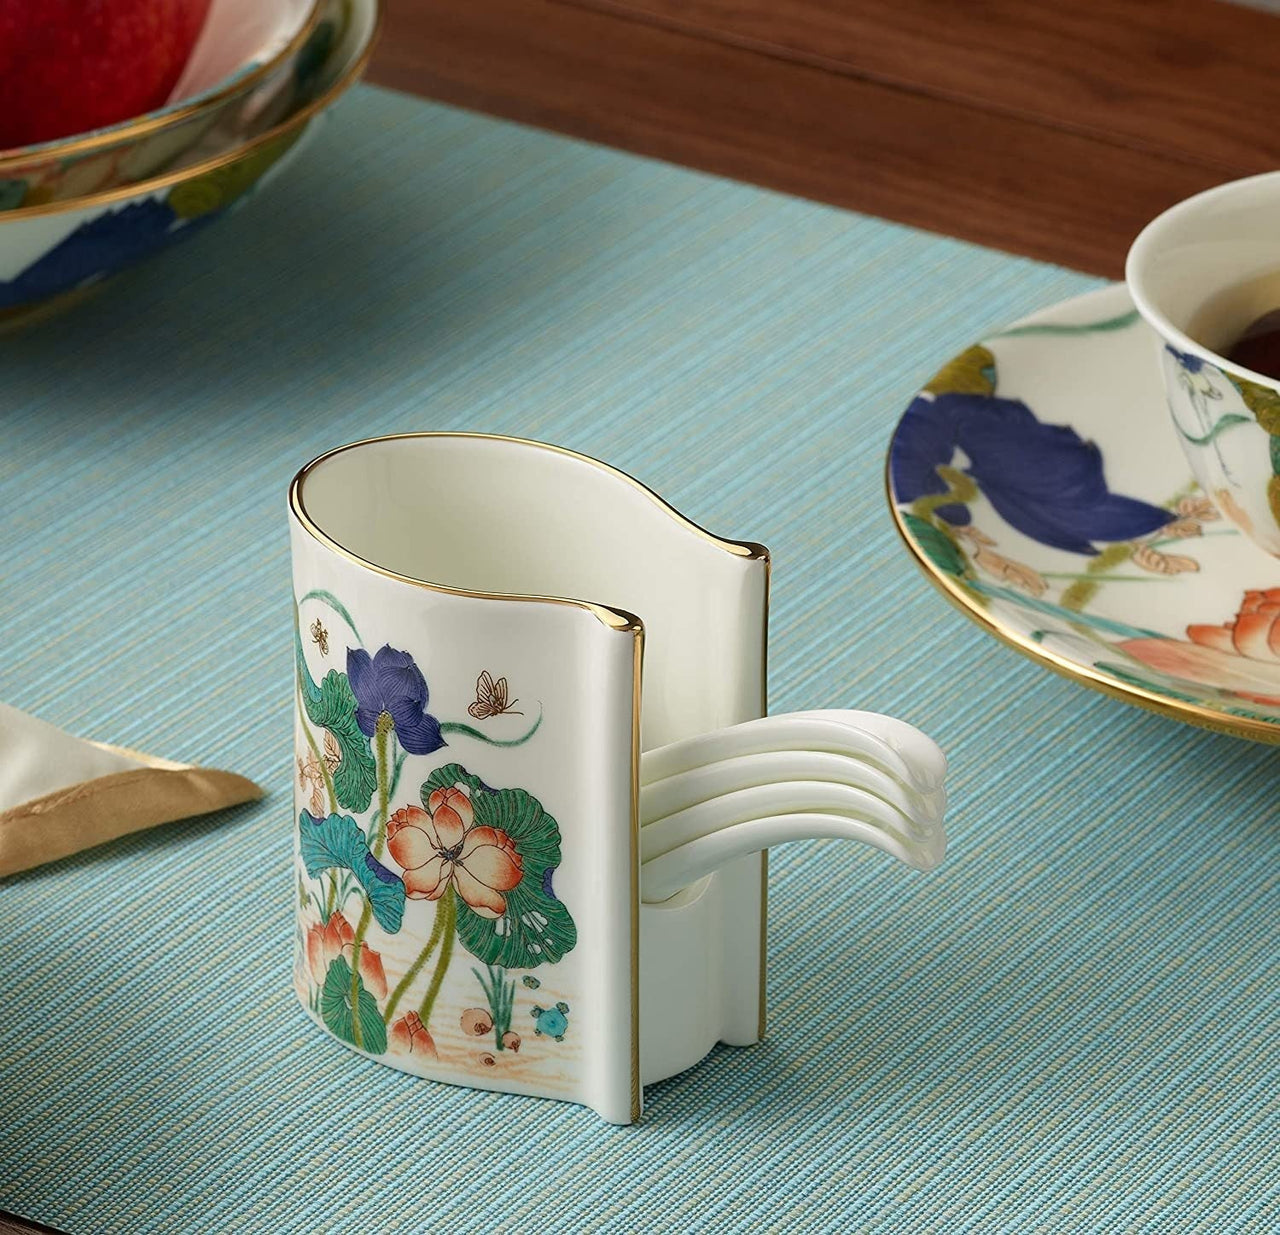 Elegant 31 - Piece Premium Porcelain Dinnerware Set - Casatrail.com